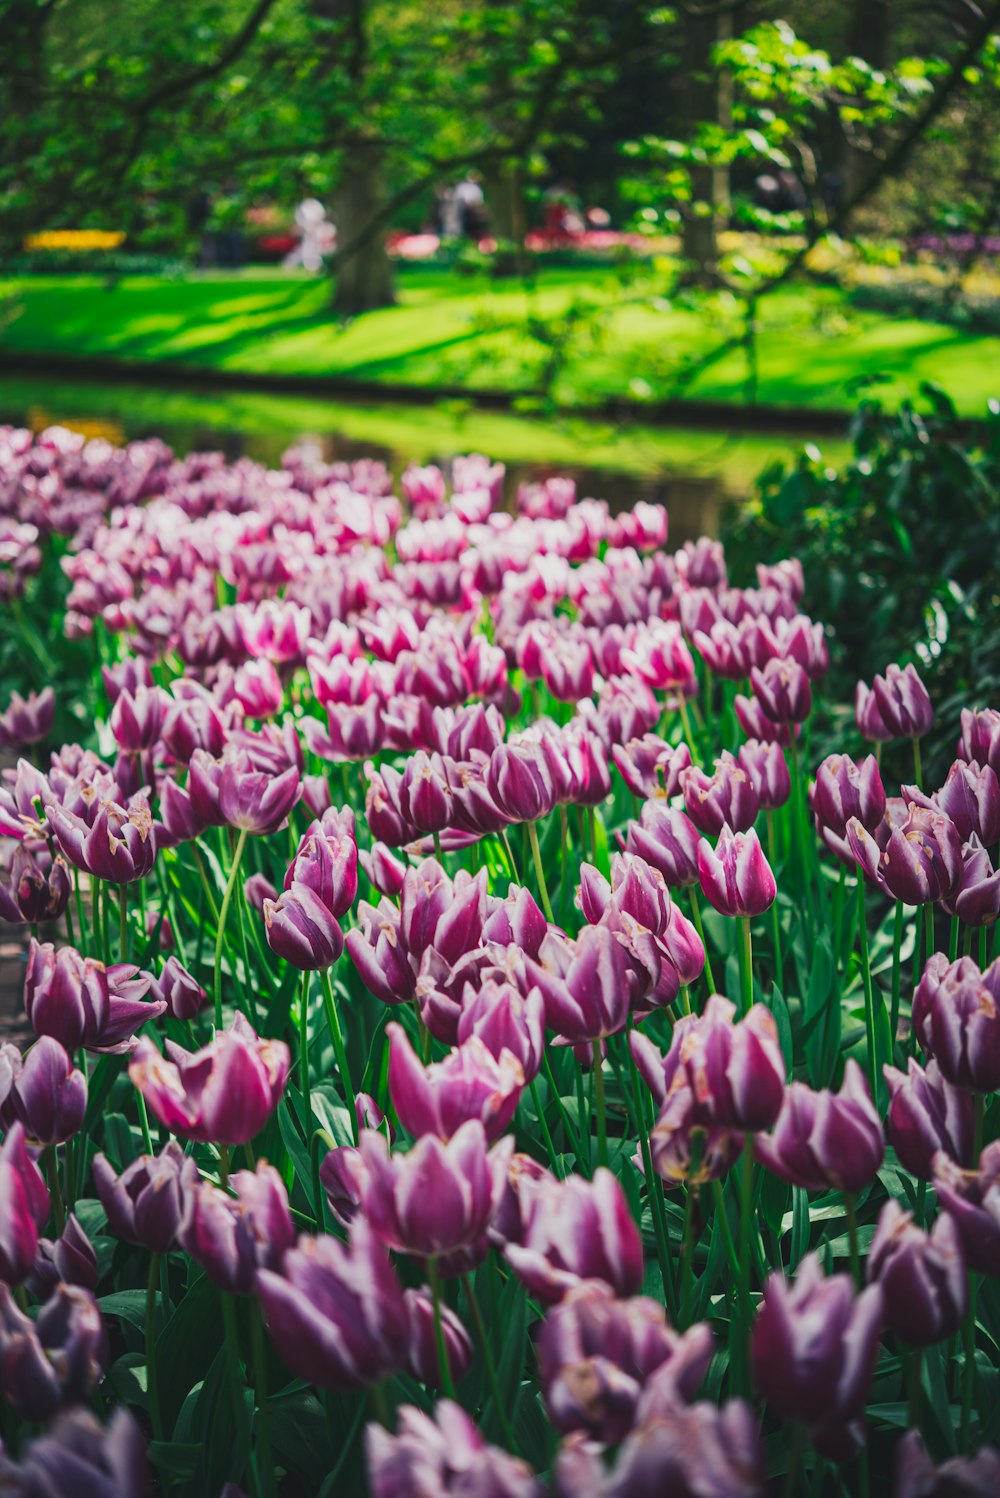 a field of purple tulips in a park